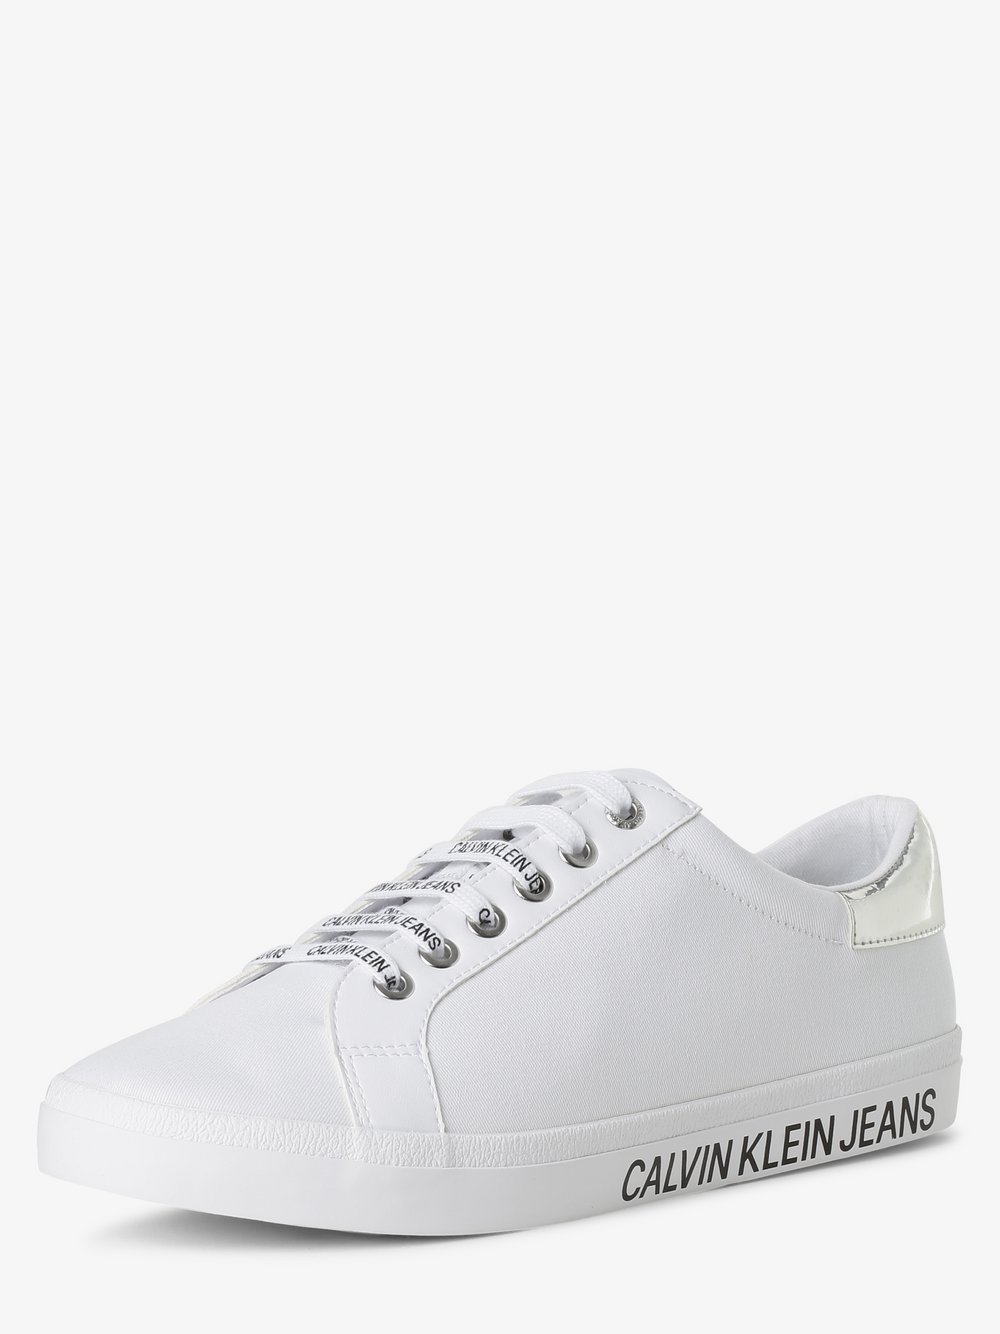 Calvin Klein Jeans - Tenisówki damskie, biały